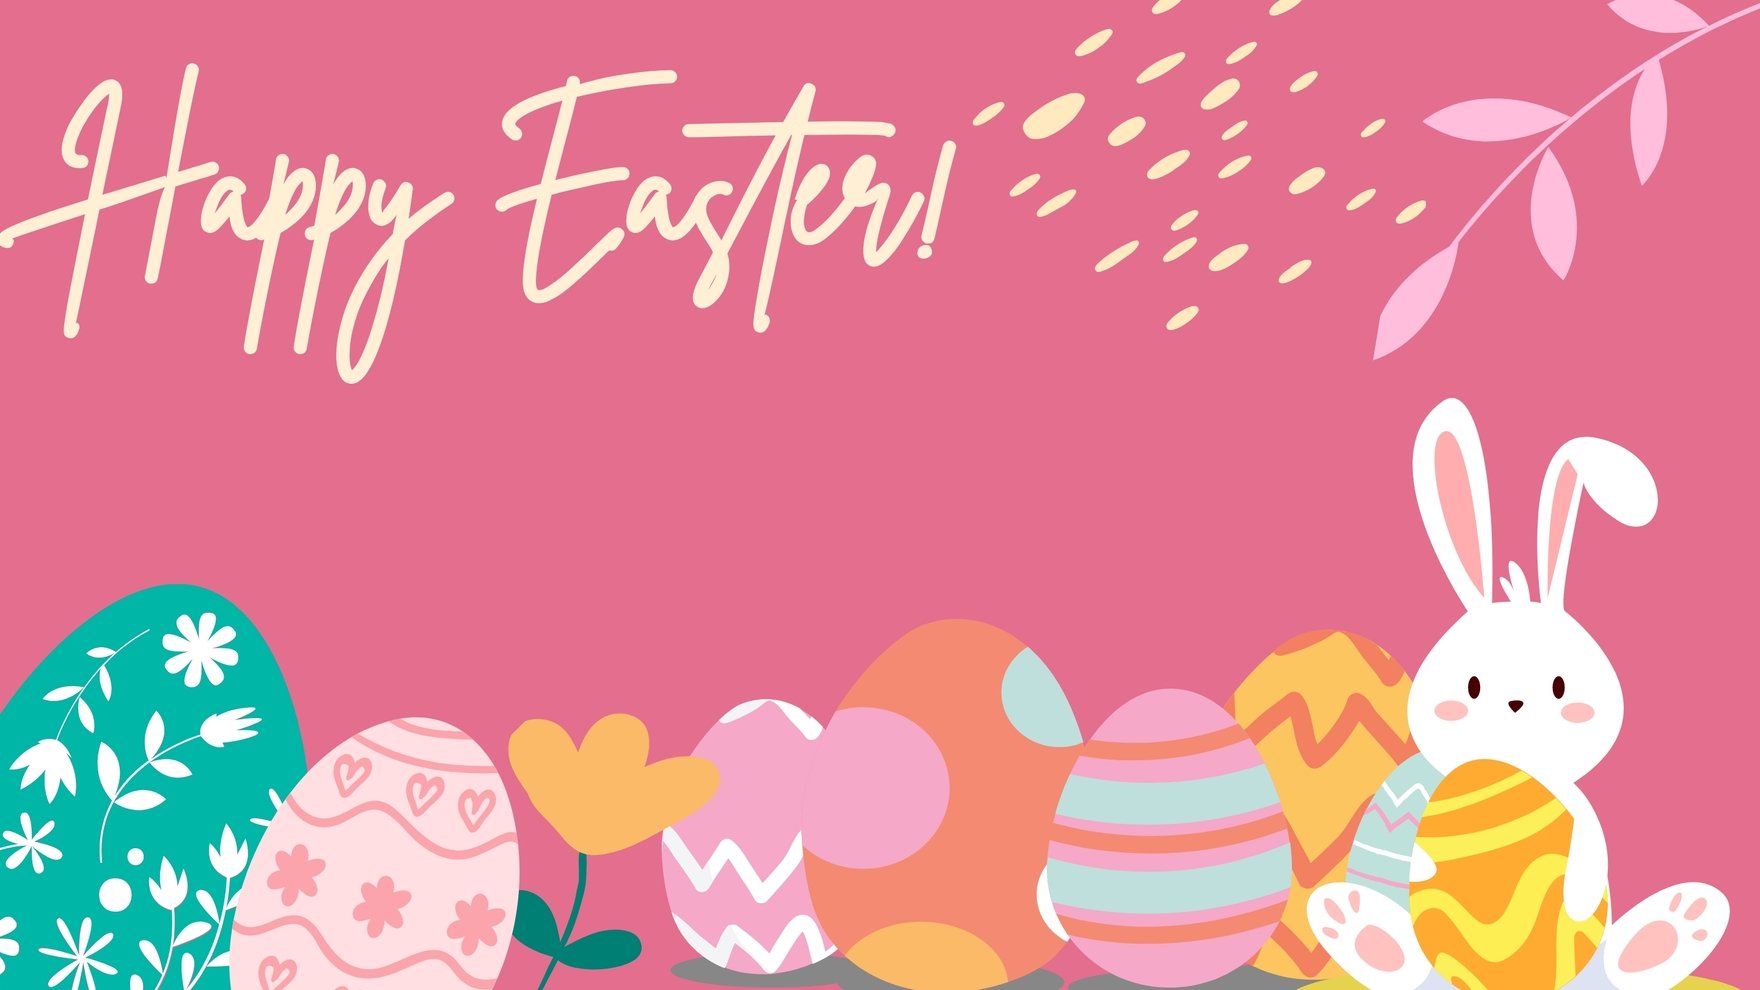 Free Easter Background - Download in PDF, Illustrator, PSD, EPS, SVG, JPG, PNG